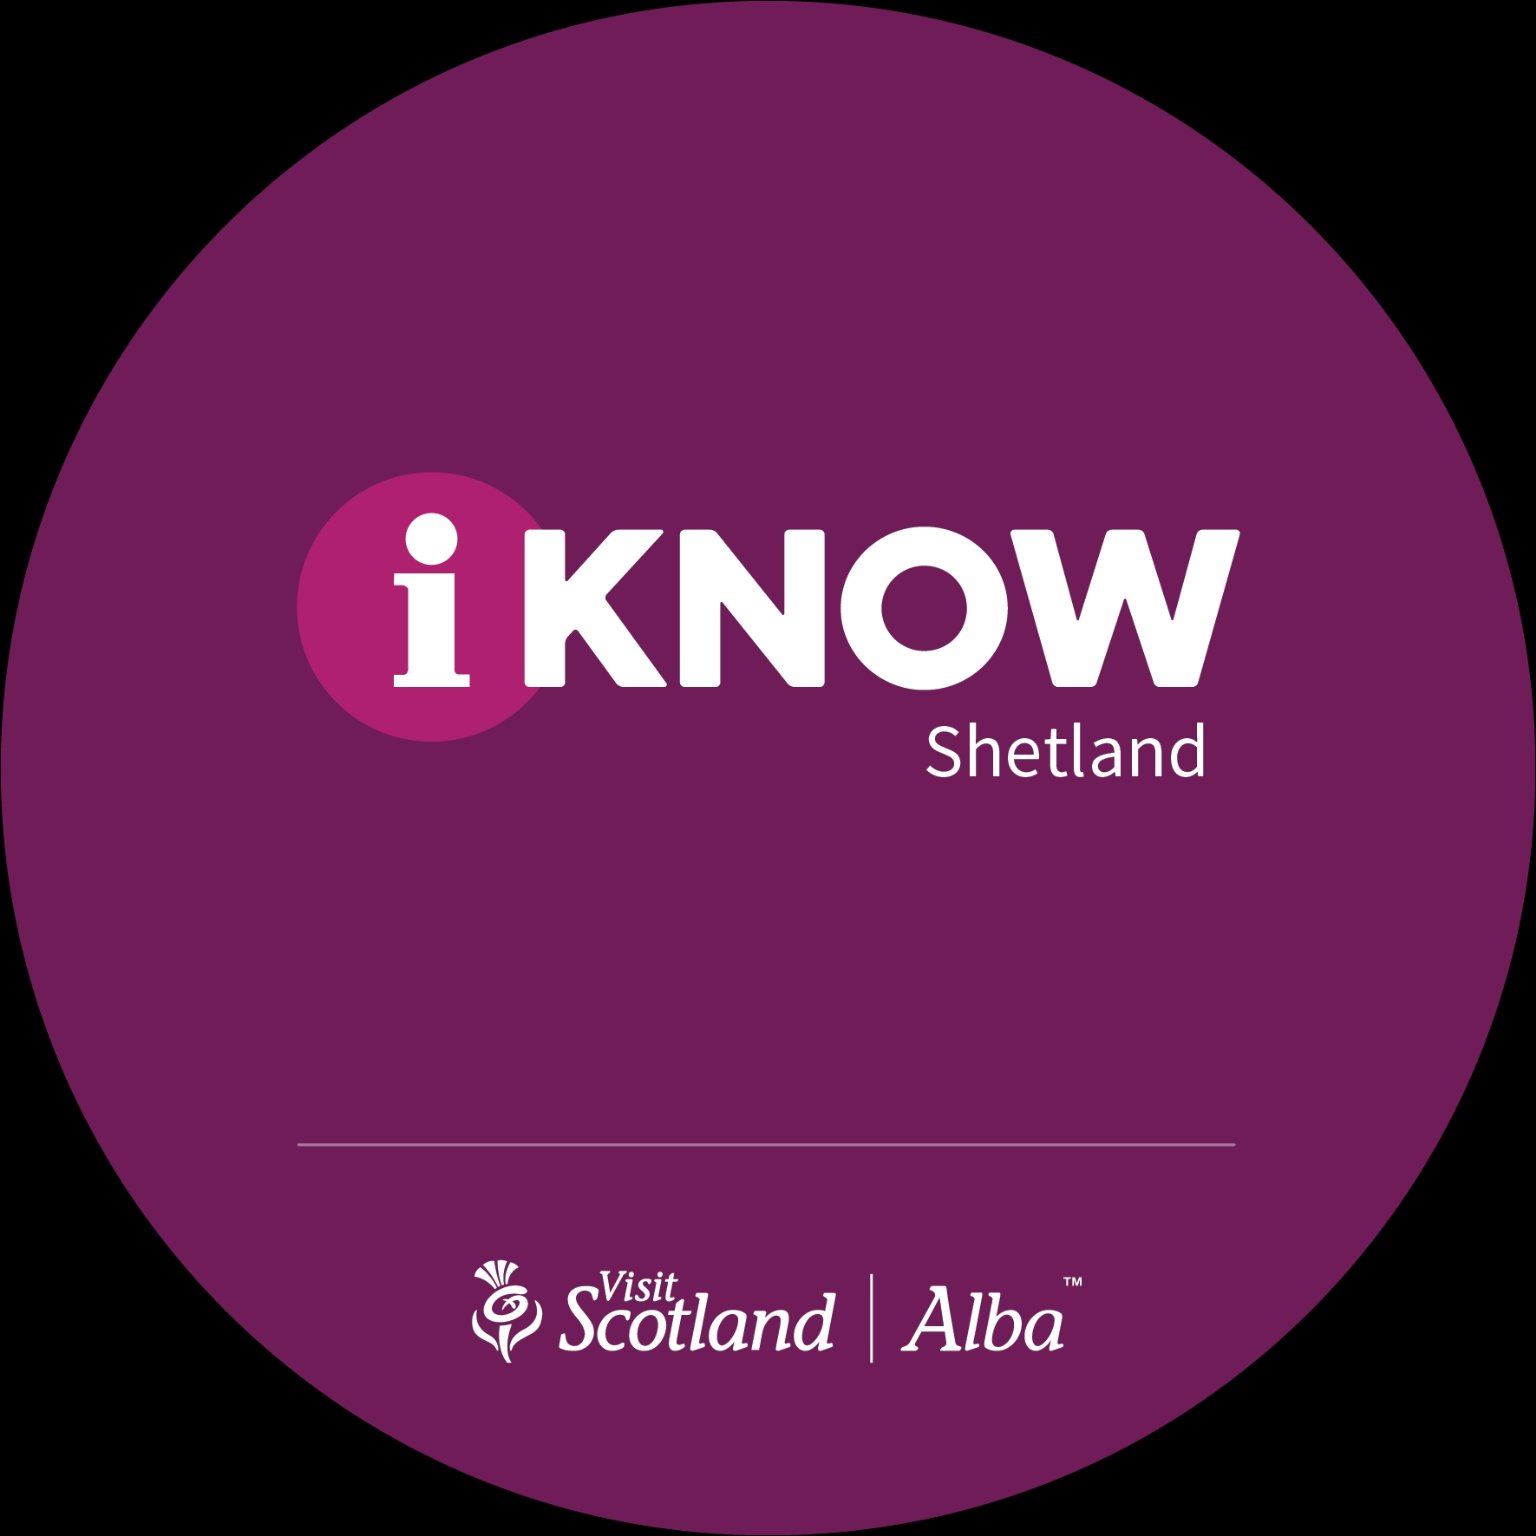 iKnow Shetland